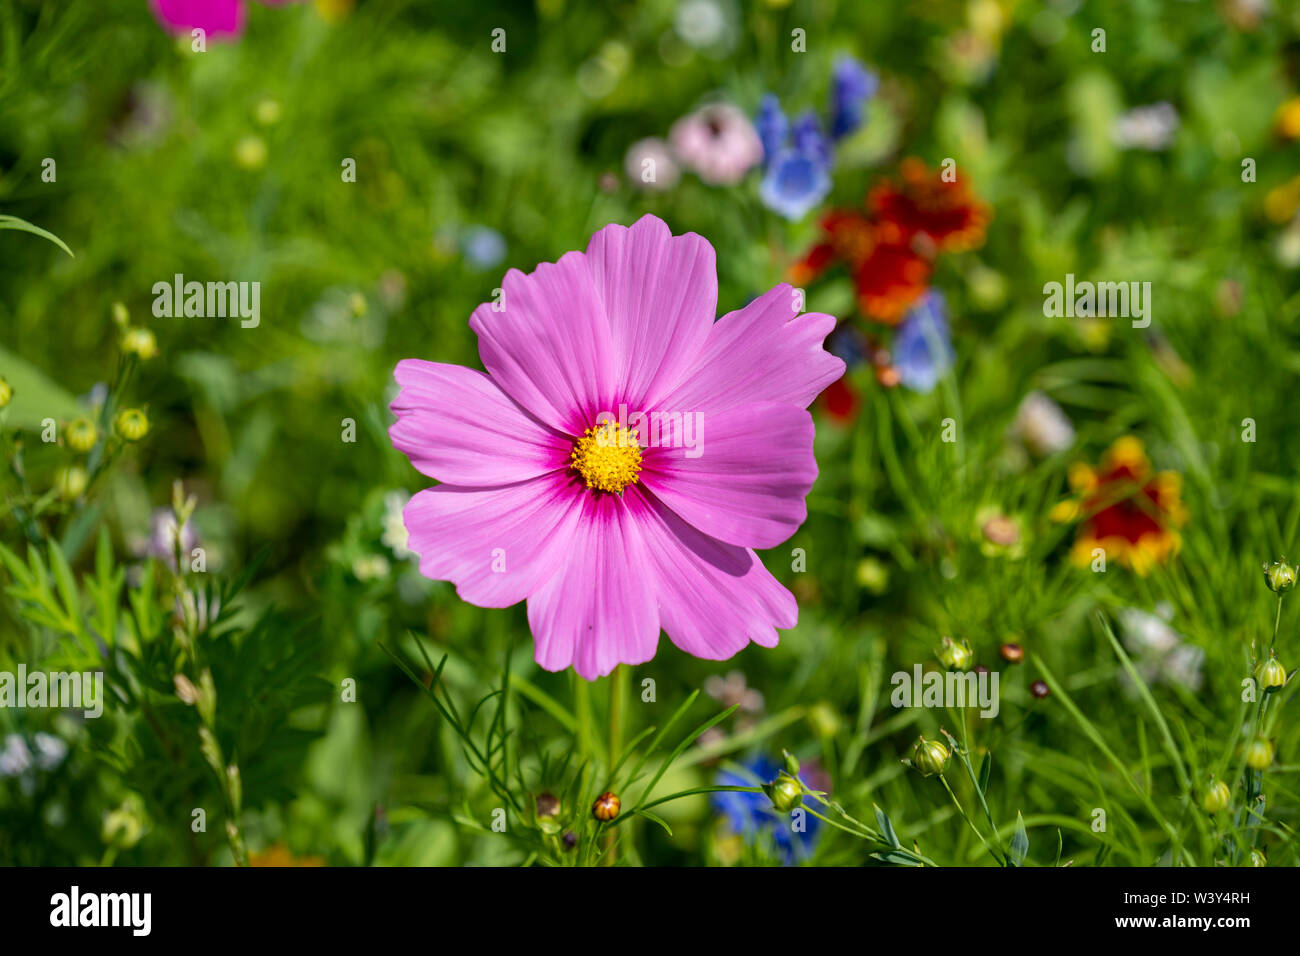 Schöne lila Blüte auf einer Blumenwiese Banque D'Images